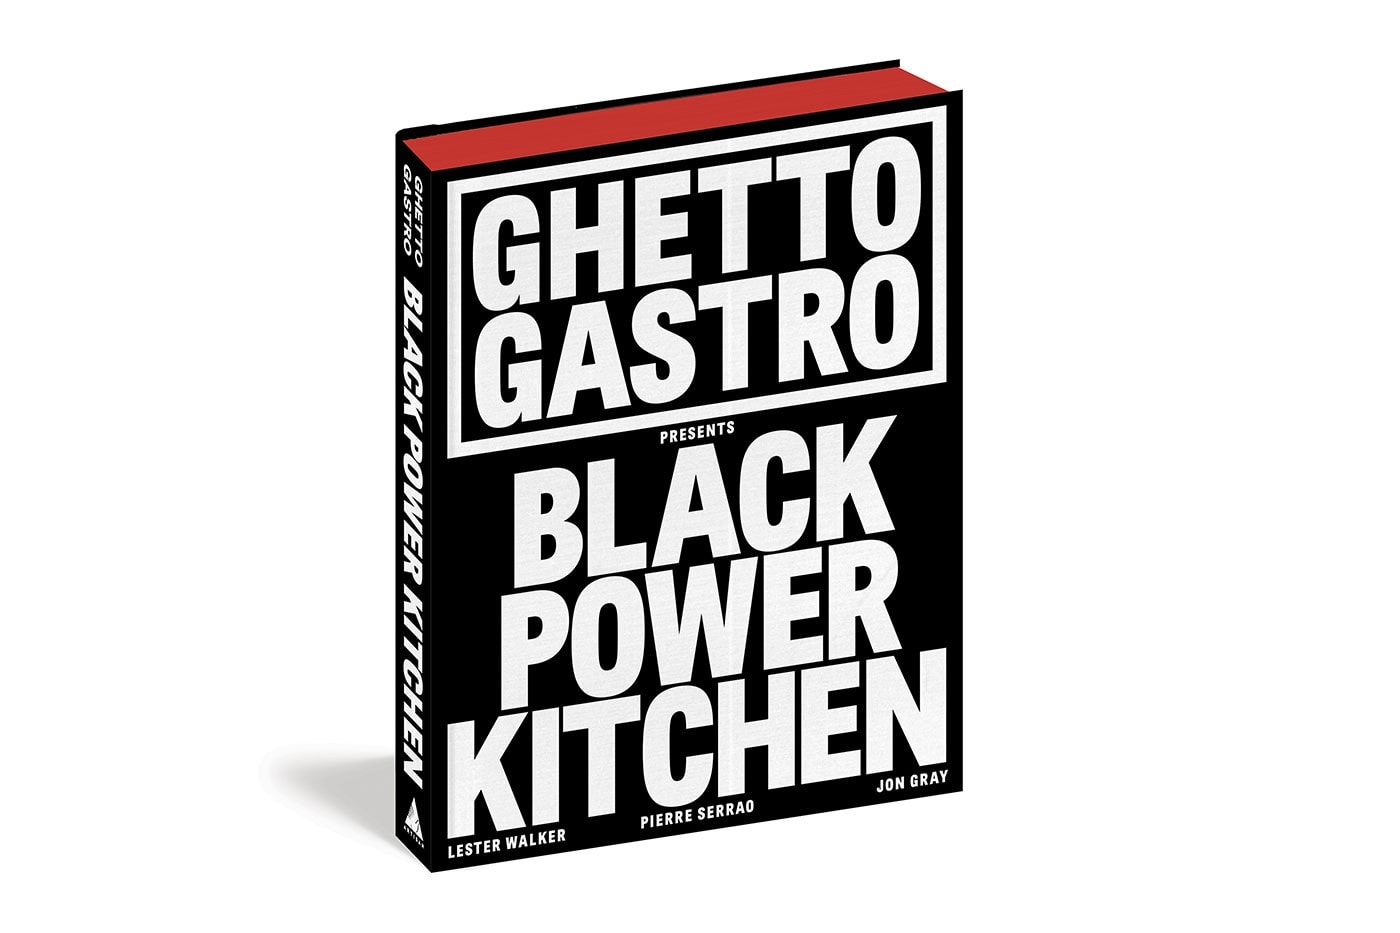 Ghetto Gastro 即将发布首本书籍 《Black Power Kitchen》